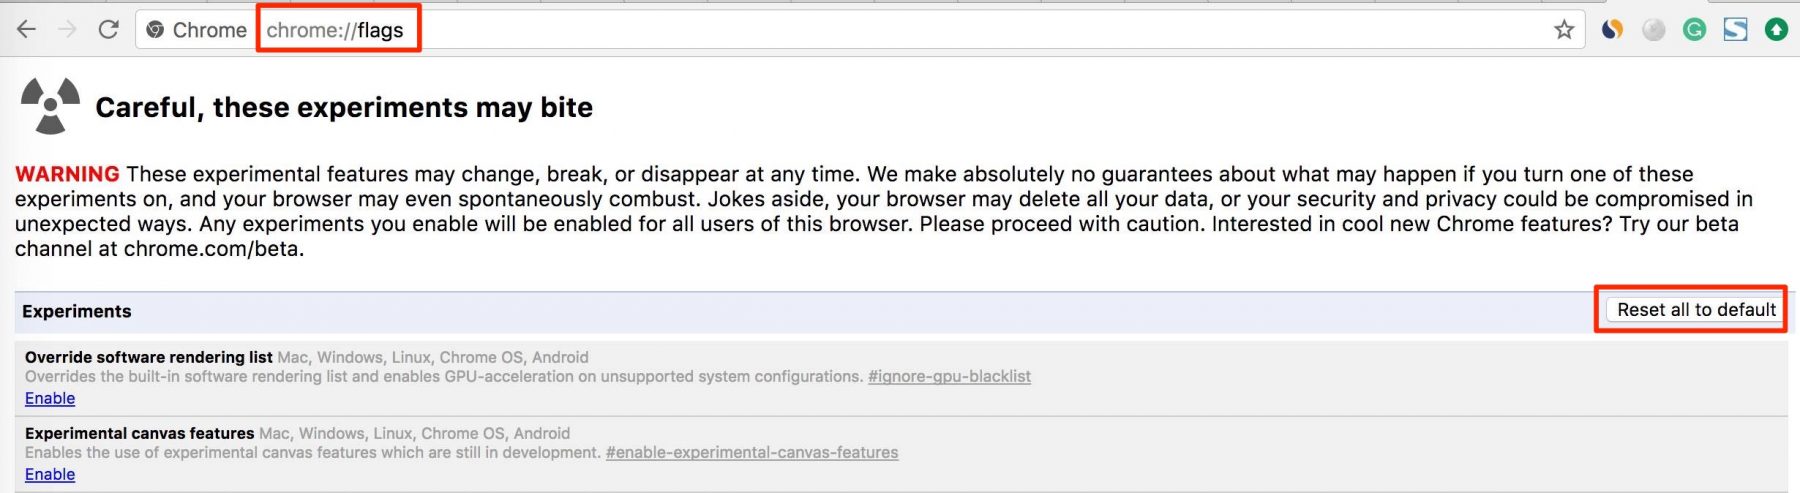 إعادة تعيين Chrome لإصلاح خطأ صفحة الويب غير متوفرة DNS_PROBE_FINISHED_NXDOMAIN